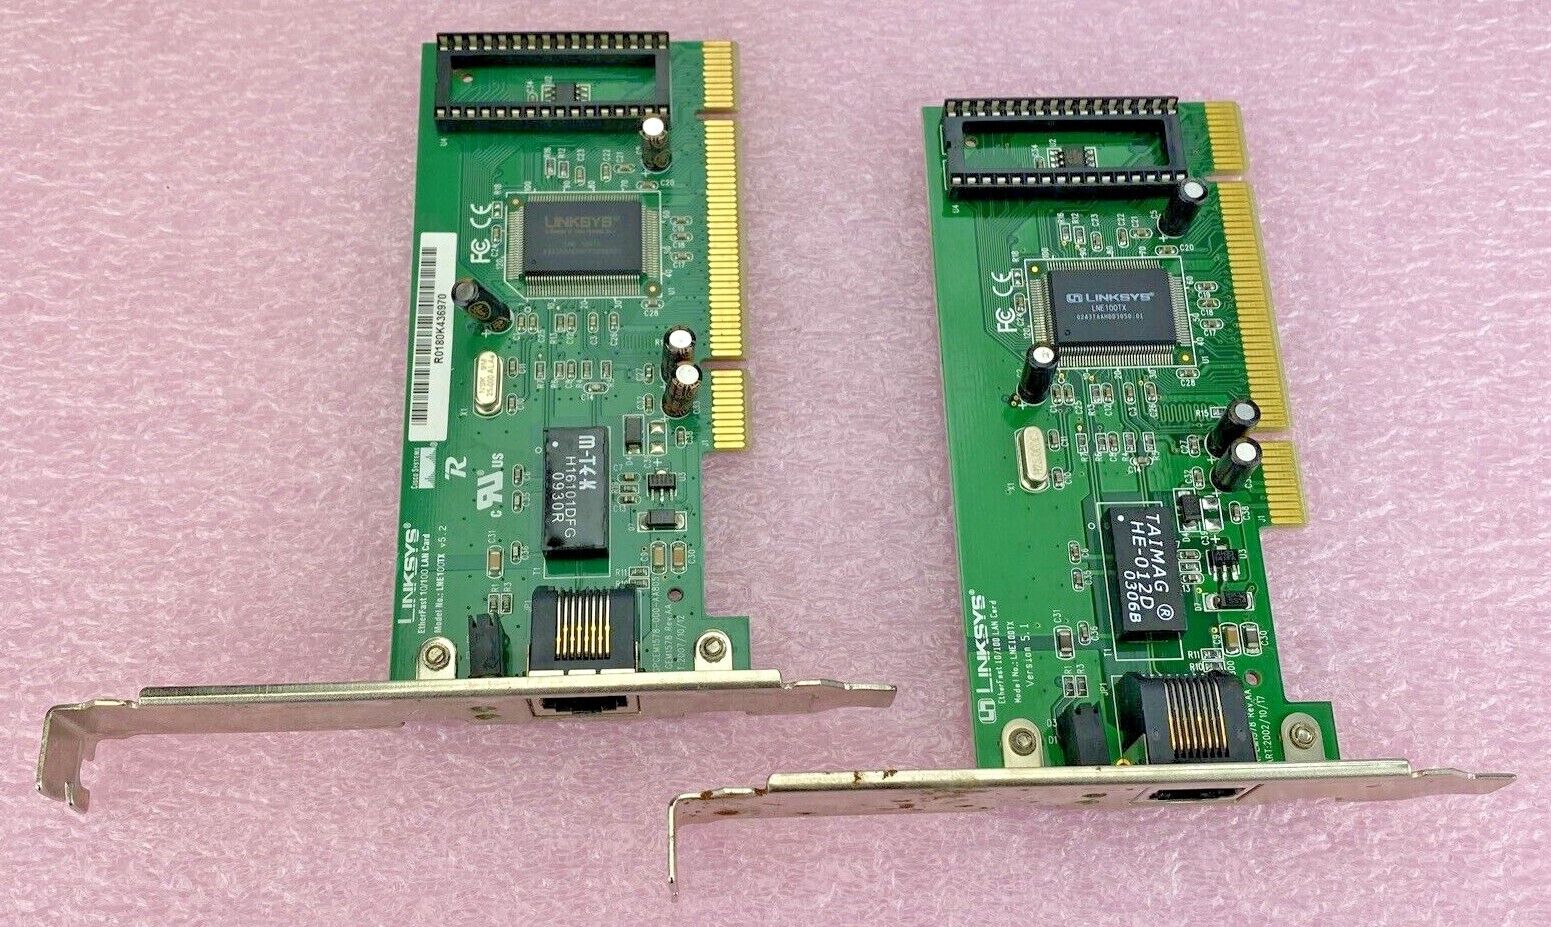 Lot of 2  Linksys GEM1578 Rev.AA EtherFast 10/100 LNE100TX LAN PCI Card